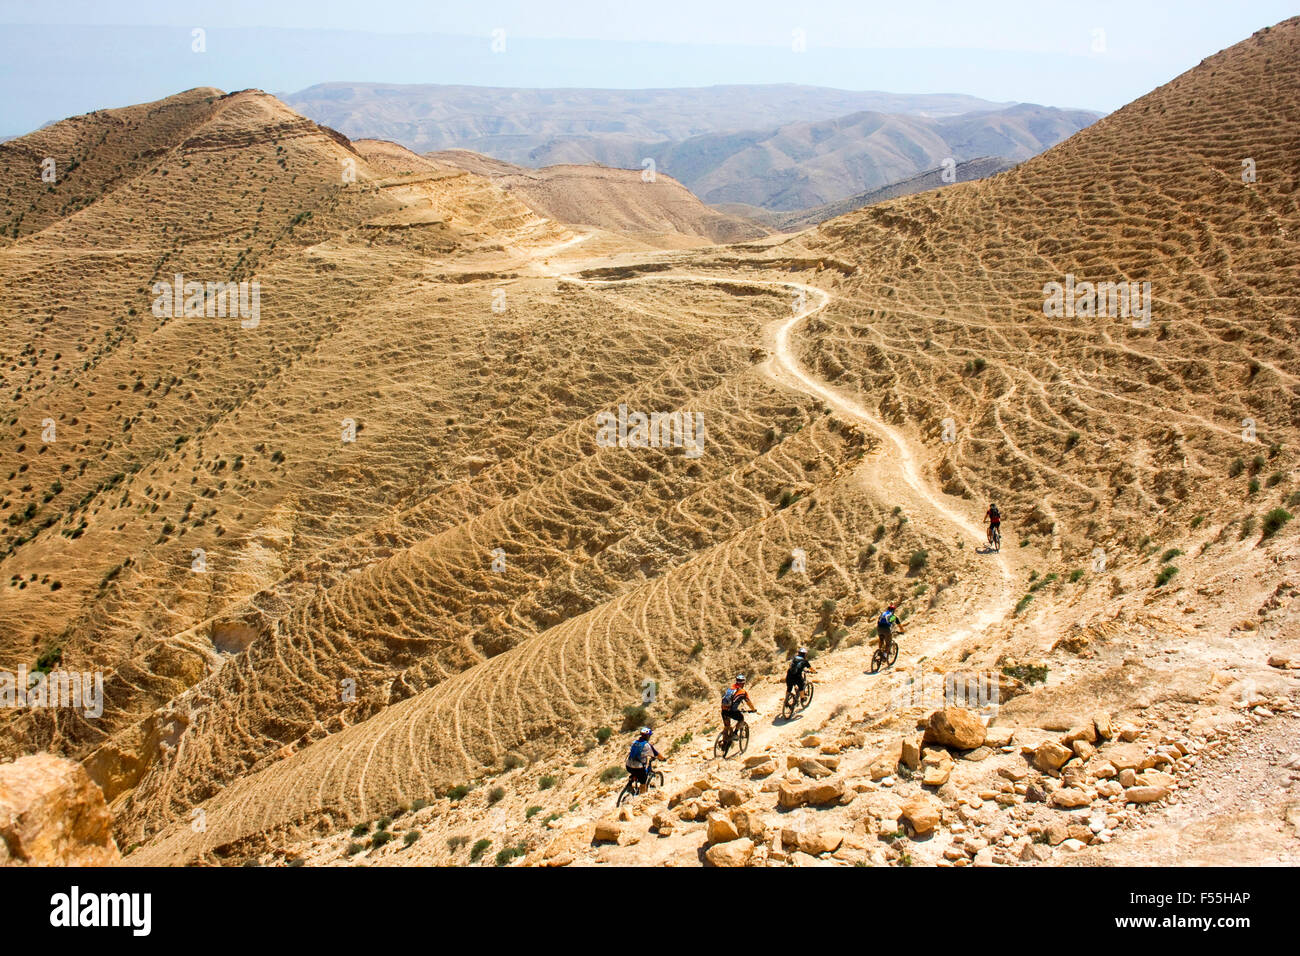 Un groupe de cyclistes dans le désert de l'Arava Israël Banque D'Images